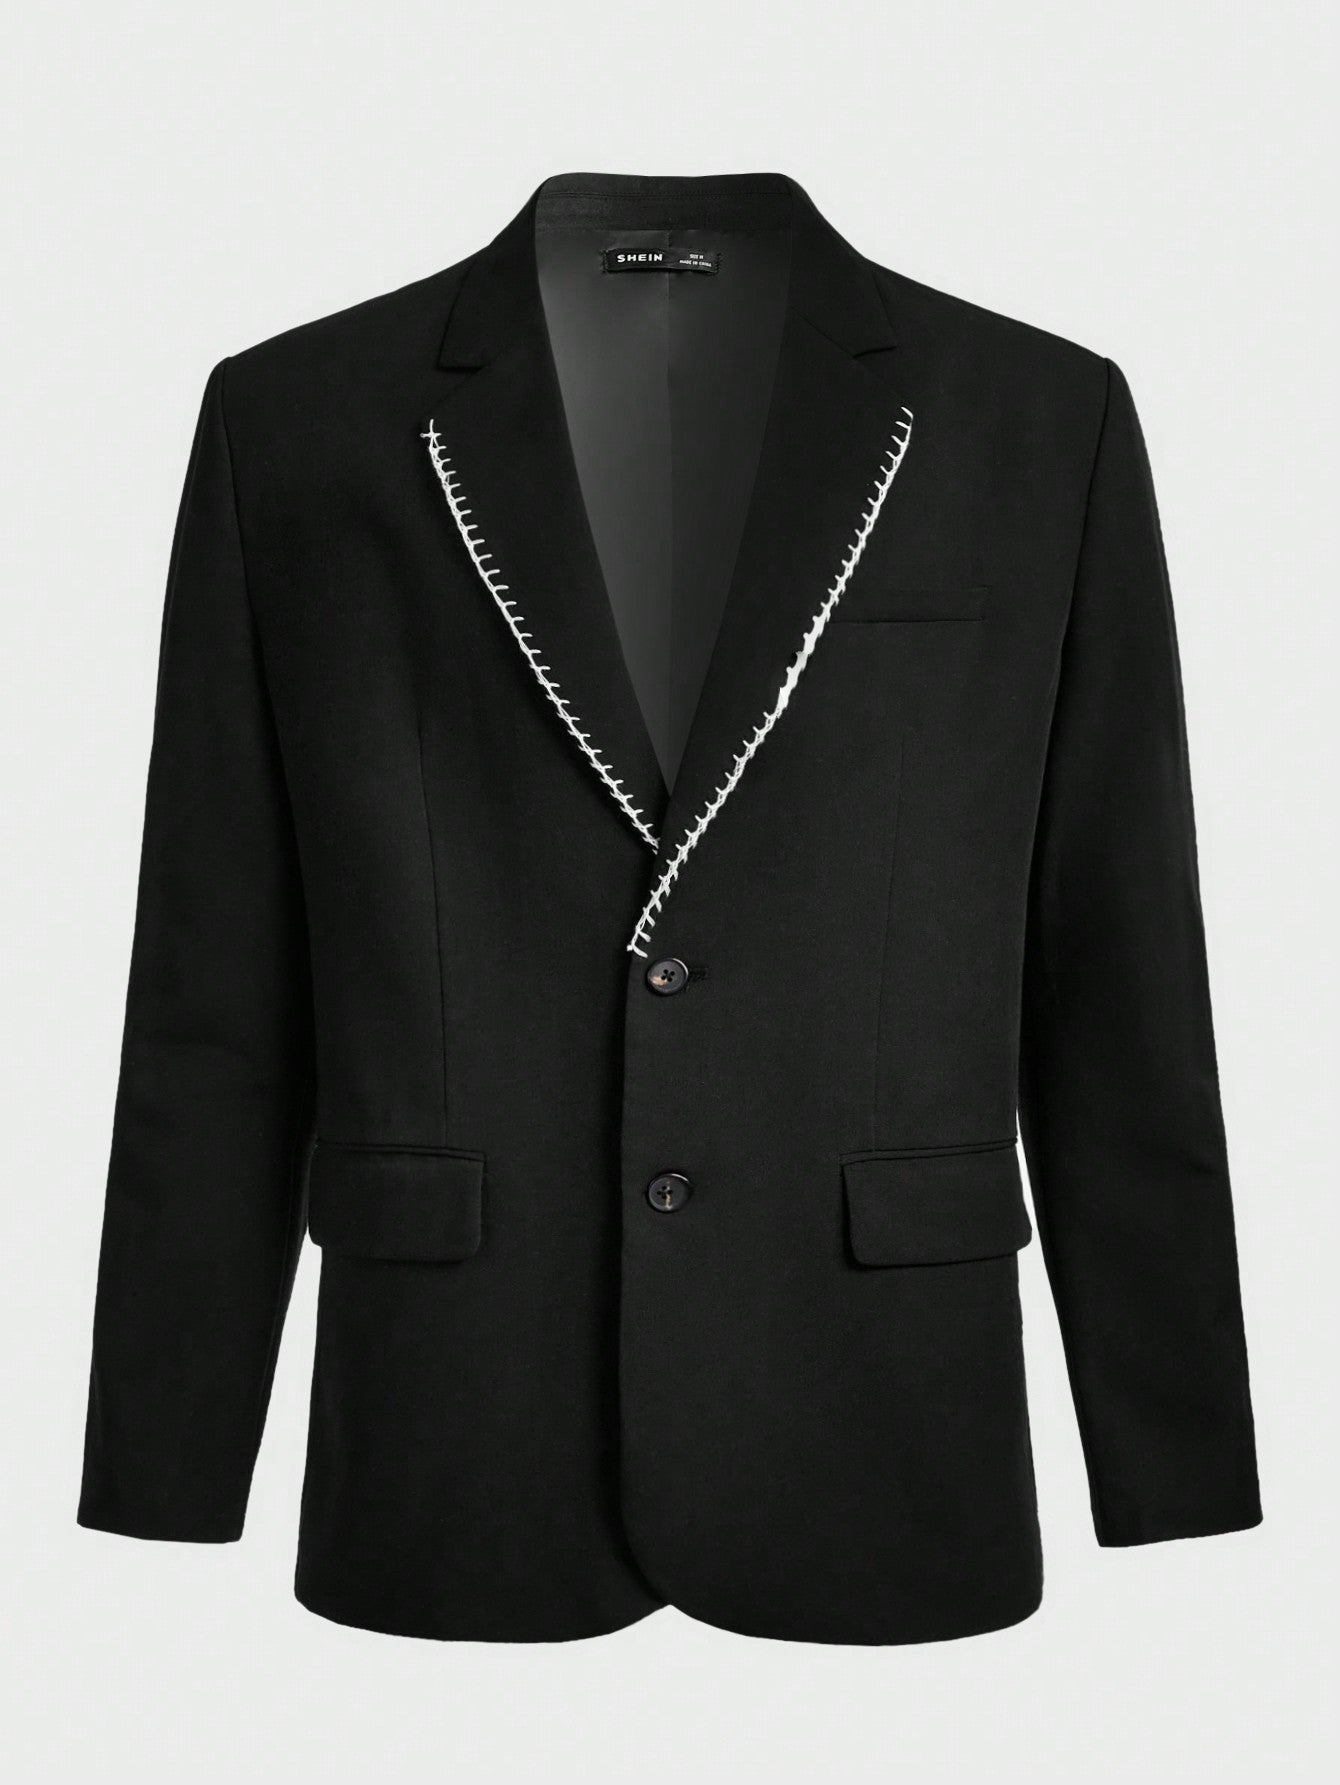 Men'S Color Block Lapel Slim Fit Suit Jacket